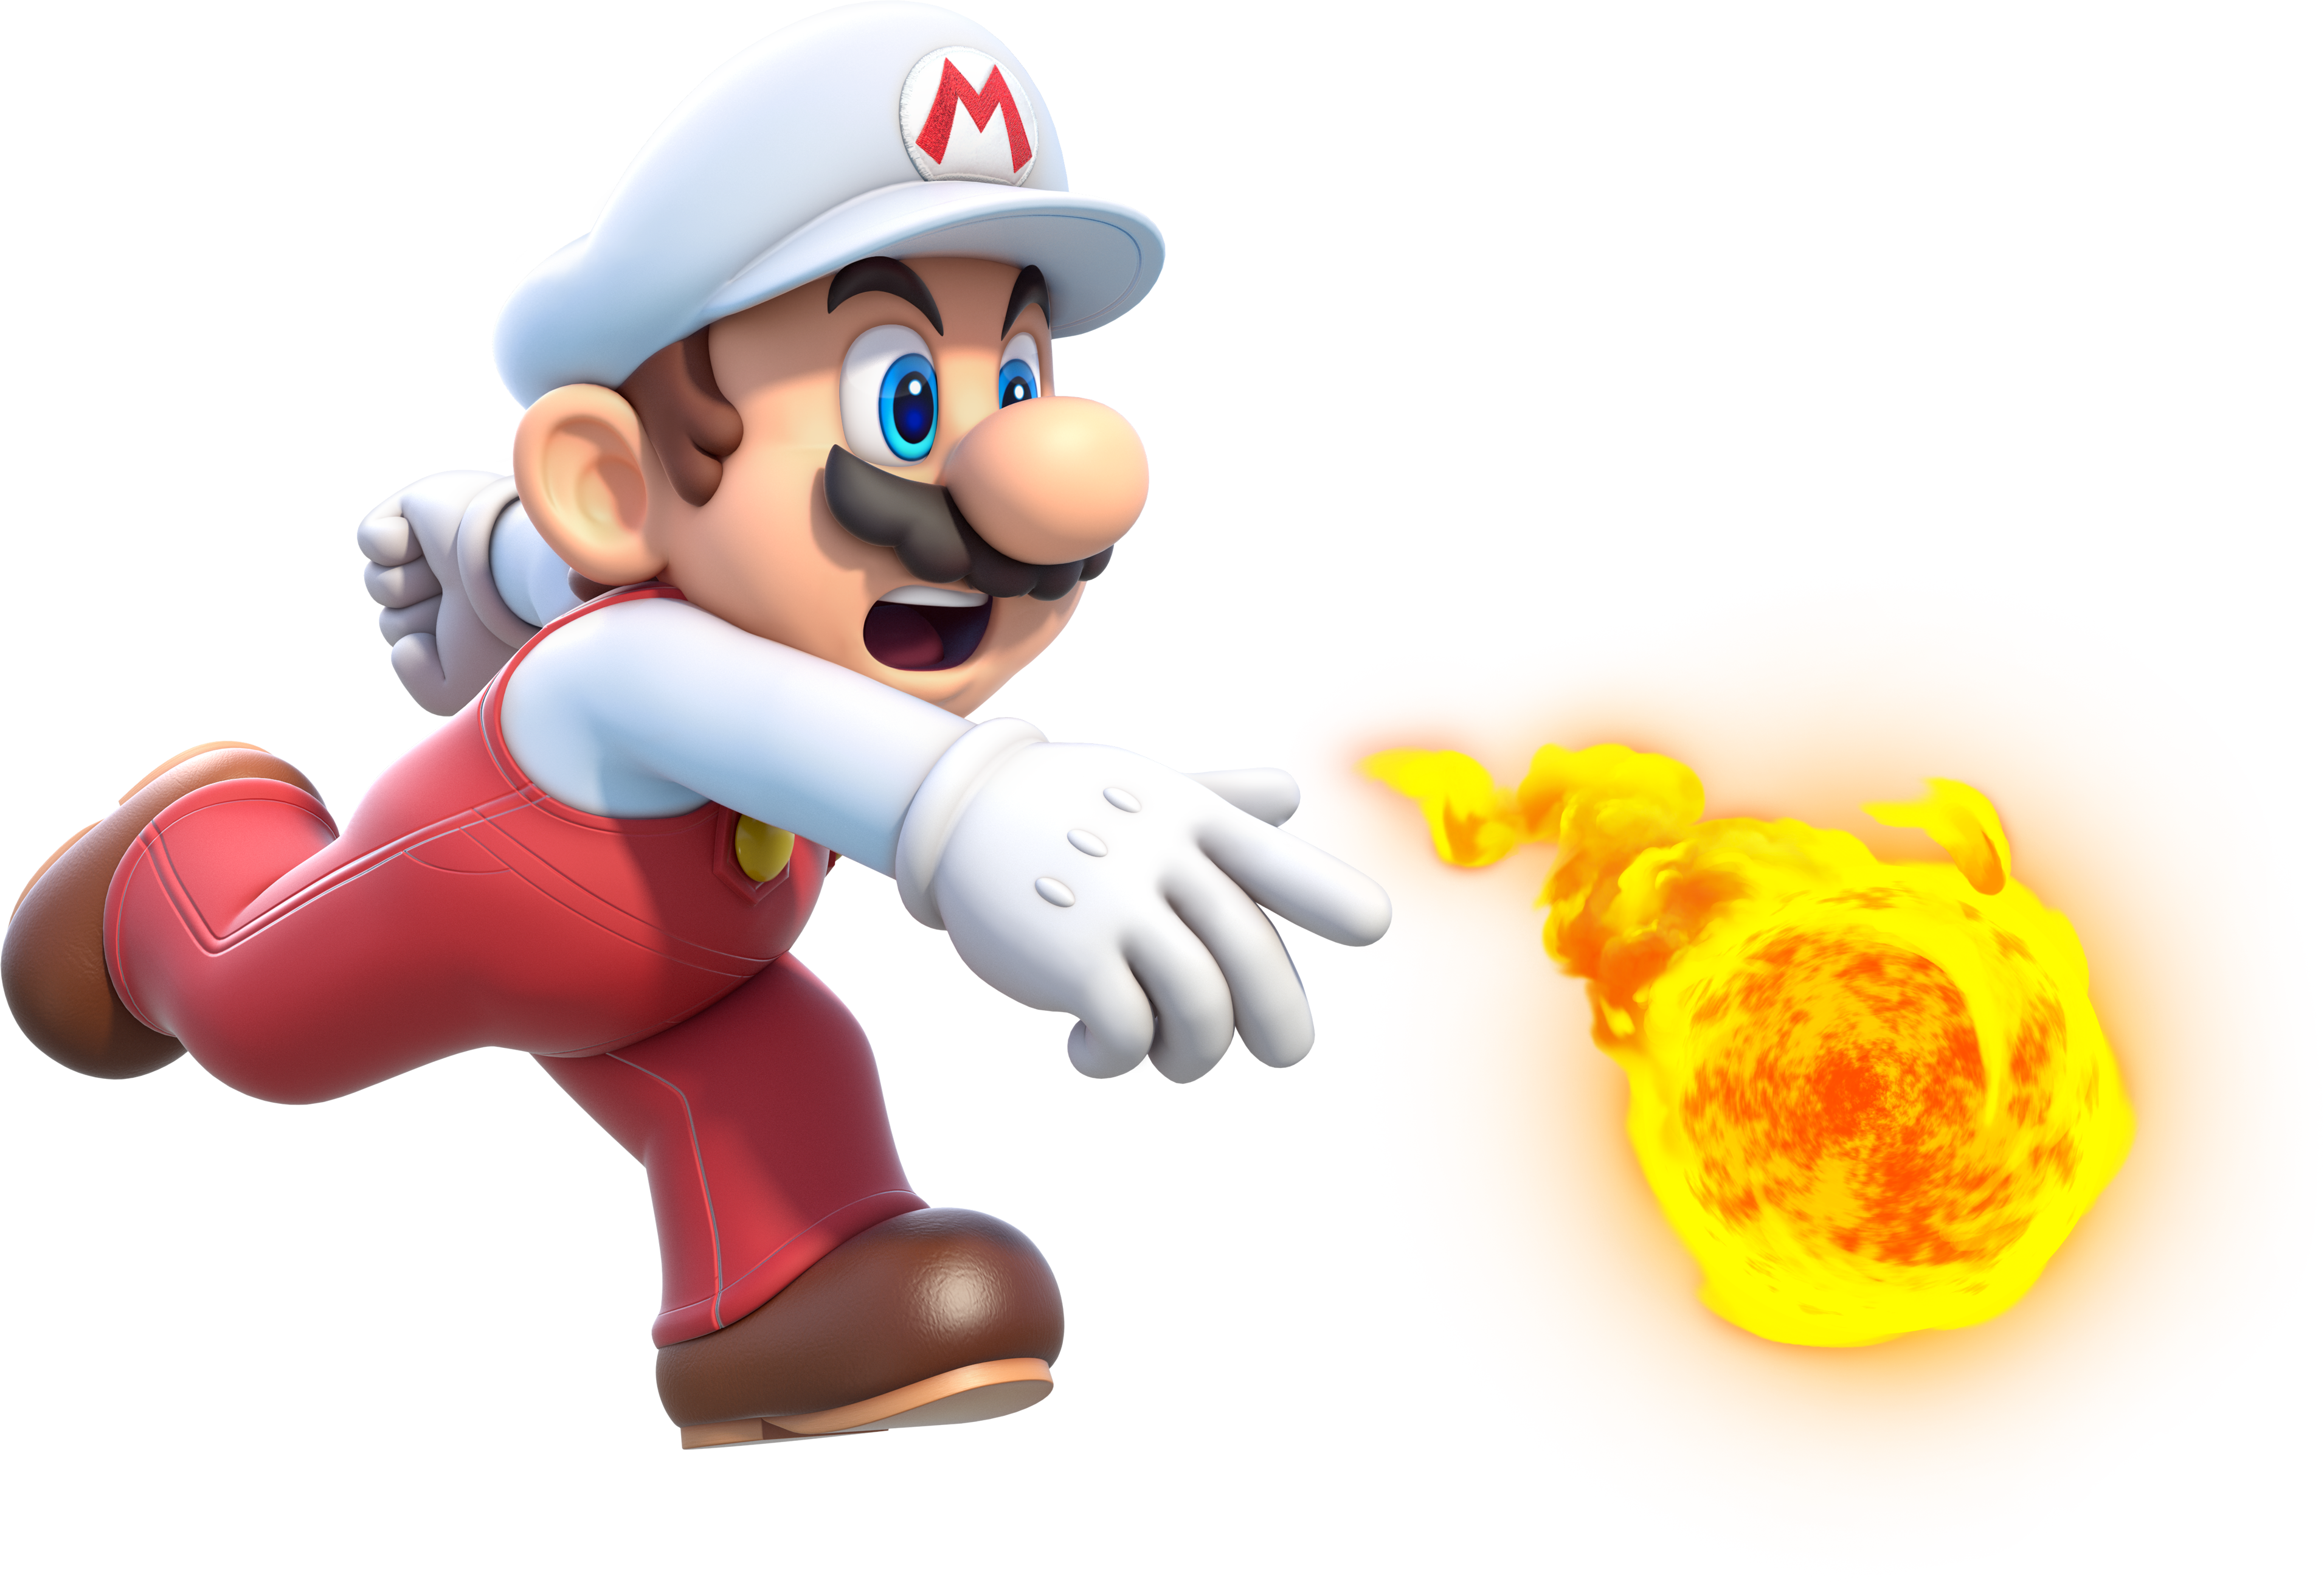 Gallery:Bowser - Super Mario Wiki, the Mario encyclopedia